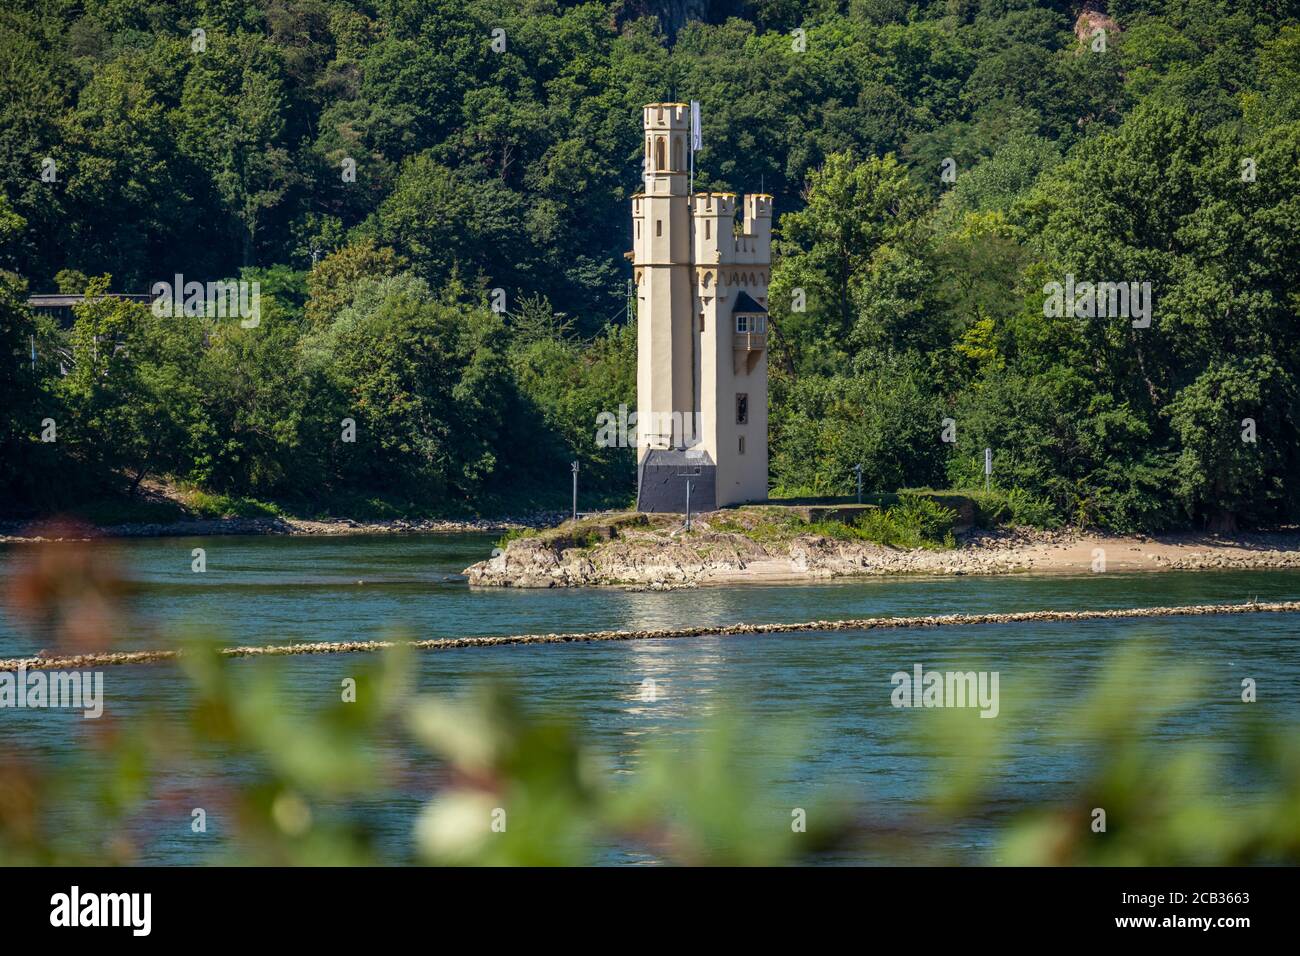 La Tour de la souris (Mäuseturm), tour en pierre sur une petite île du Rhin, en dehors de Bingen am Rhein, Allemagne Banque D'Images